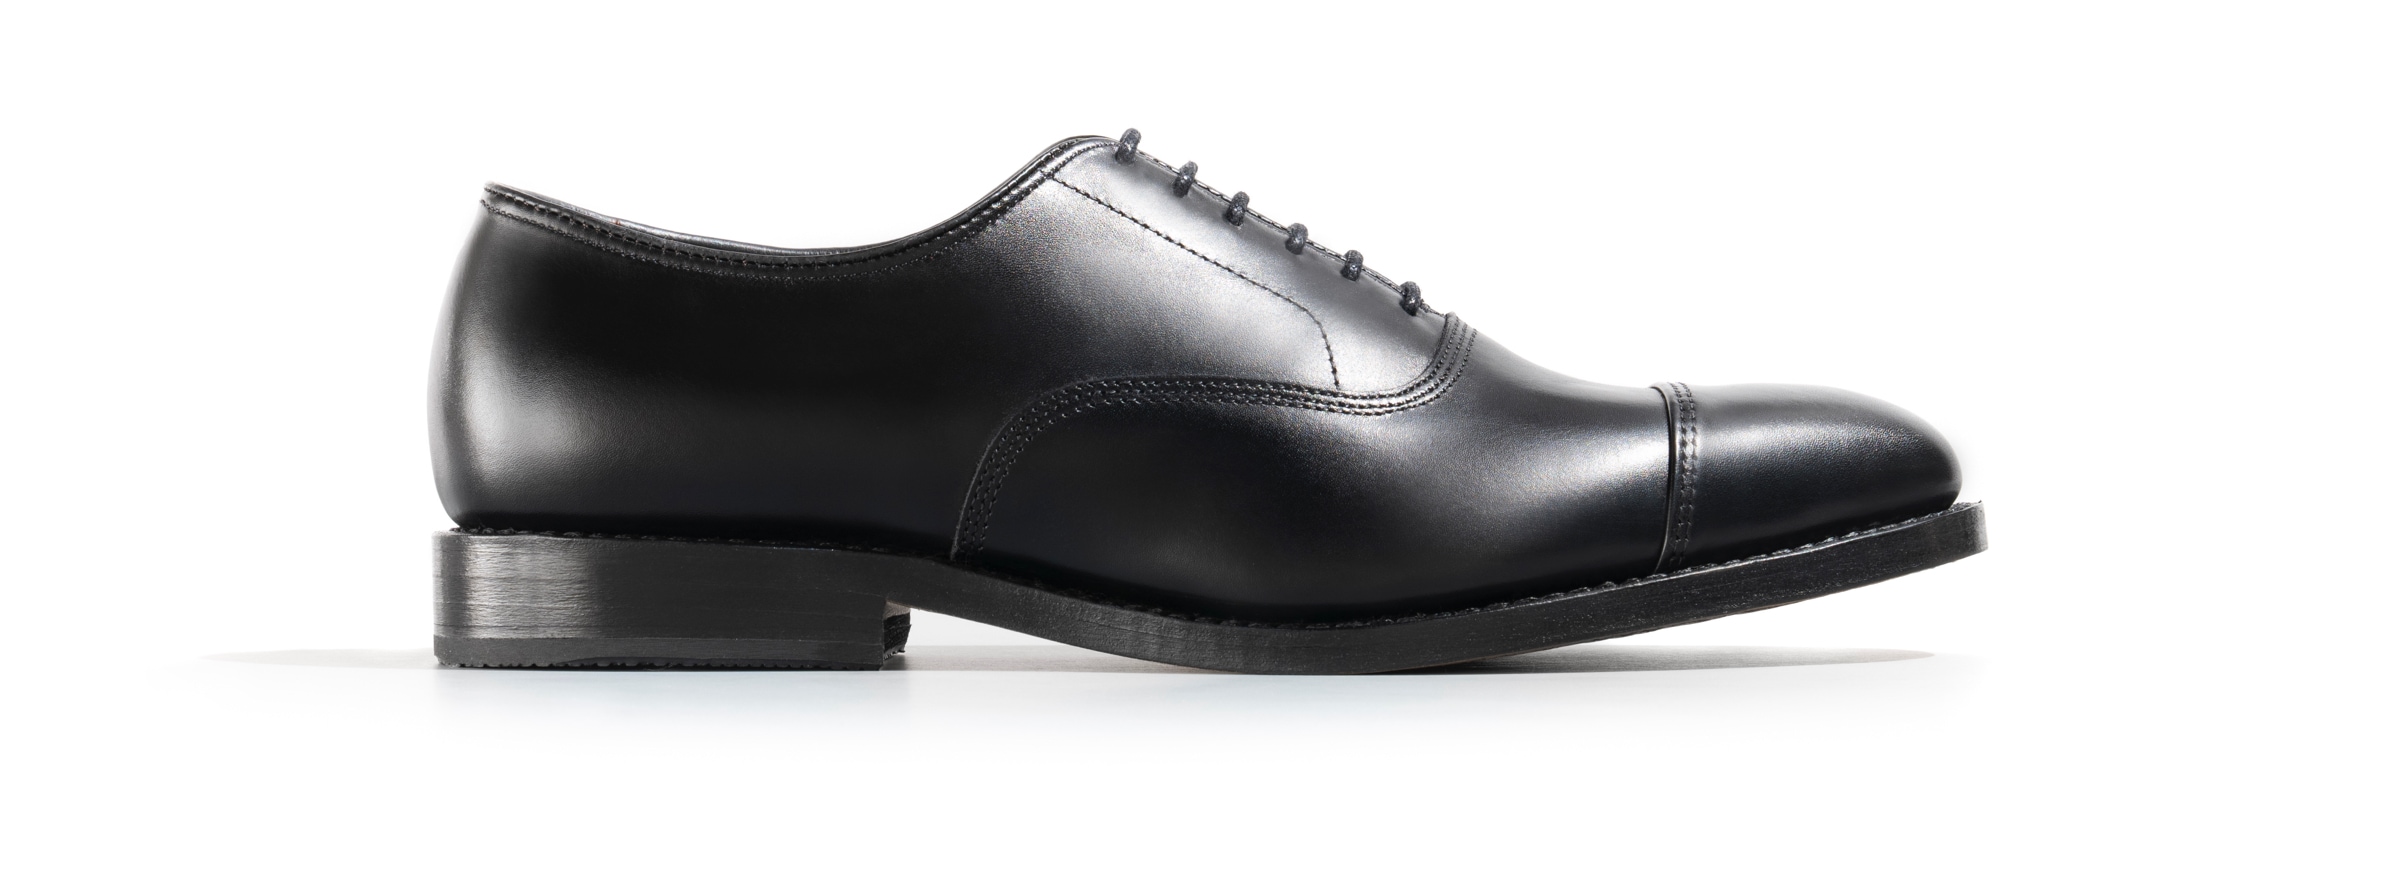 Men's Shoes | Dress, Casual, Boots & More | Allen Edmonds